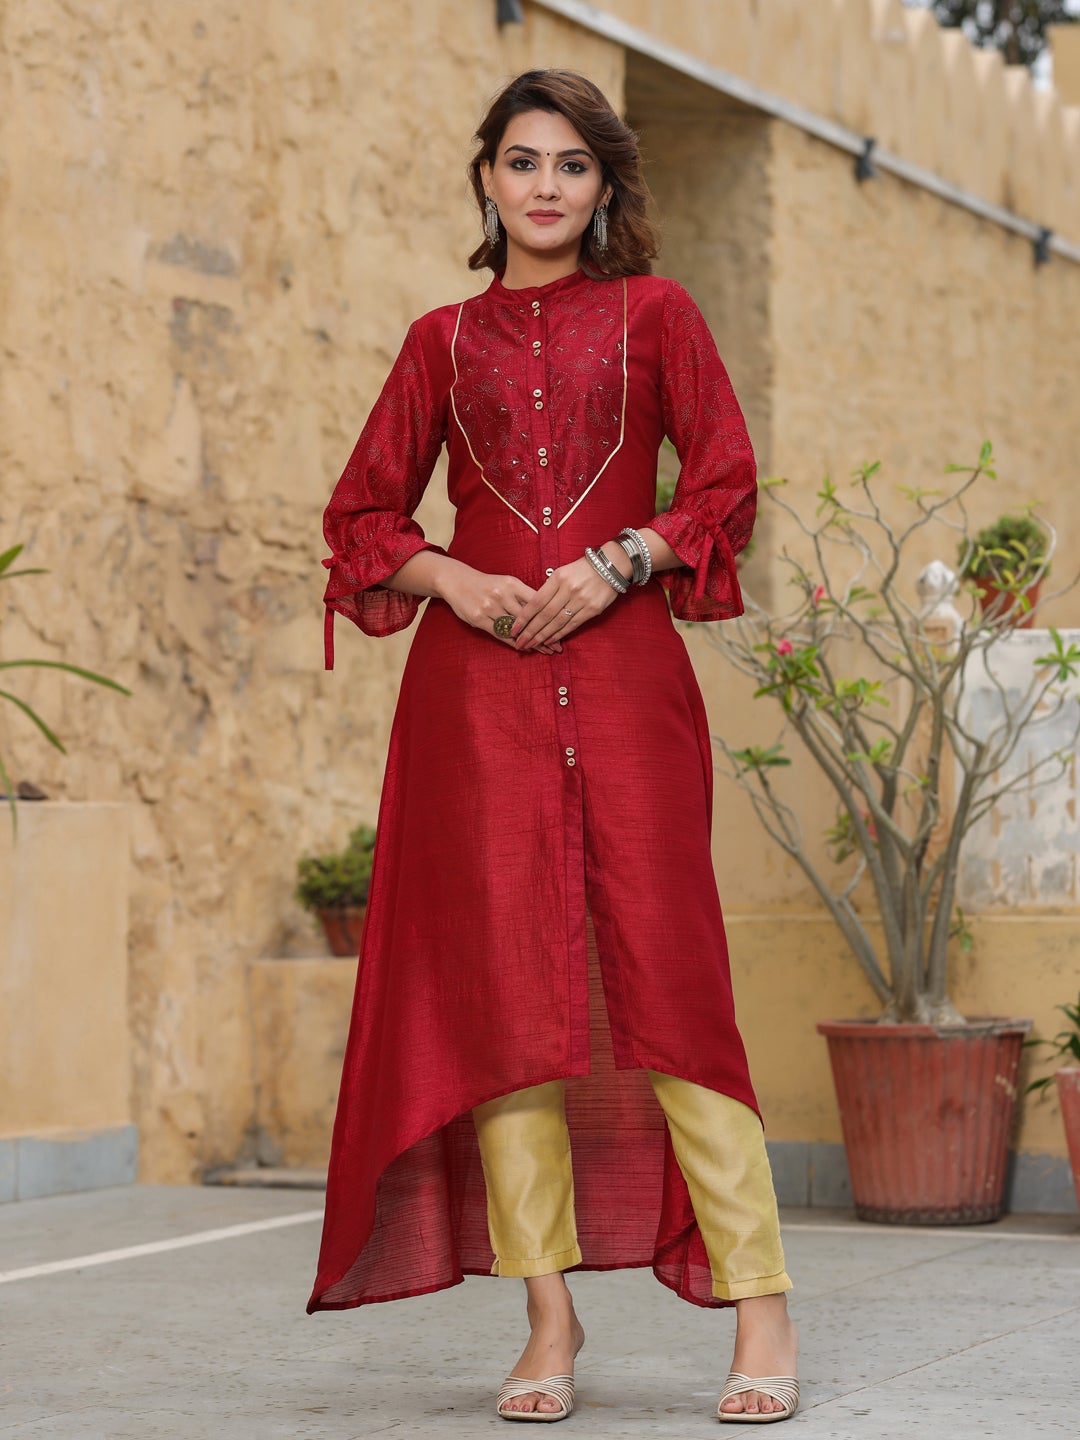 Gold Banarasi Dupatta – Hay Clothing